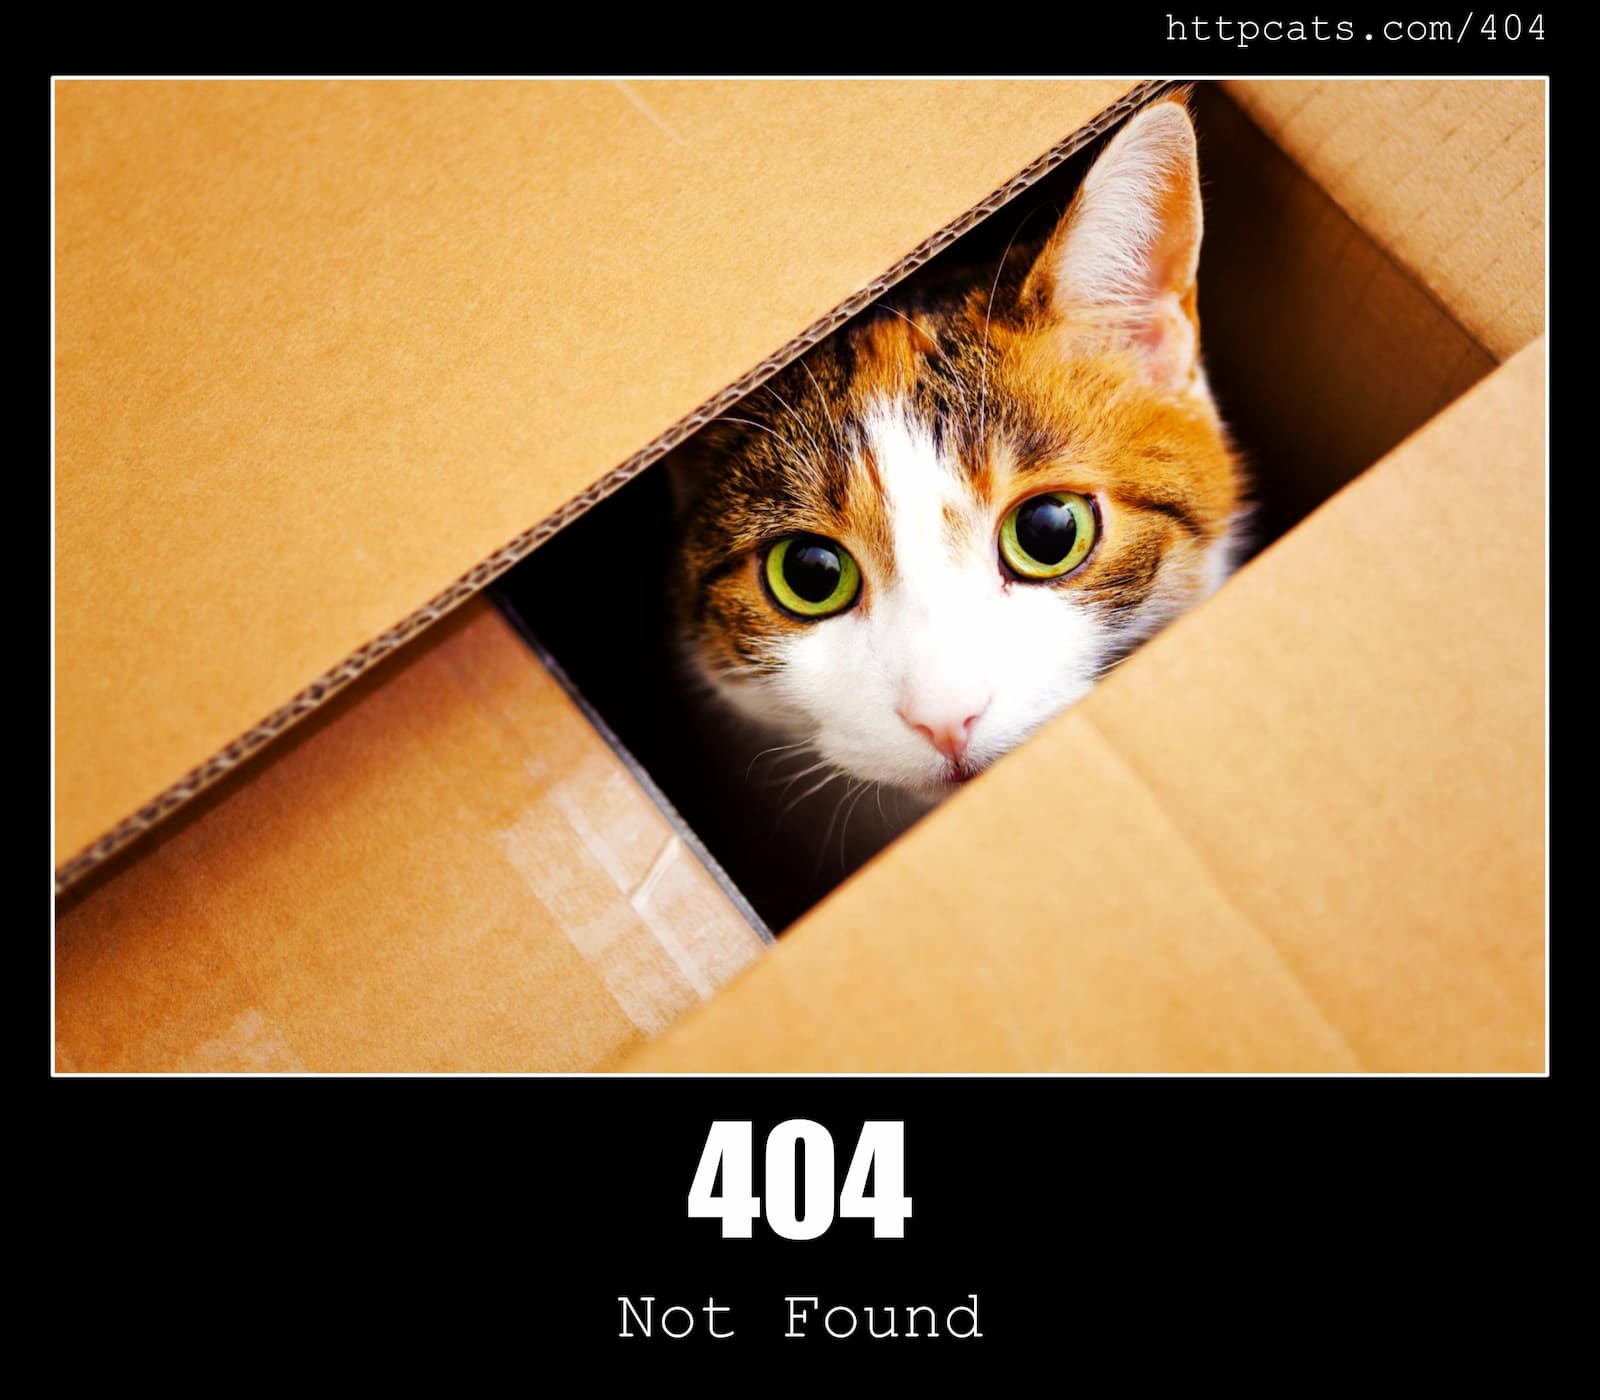 404 - Not Found